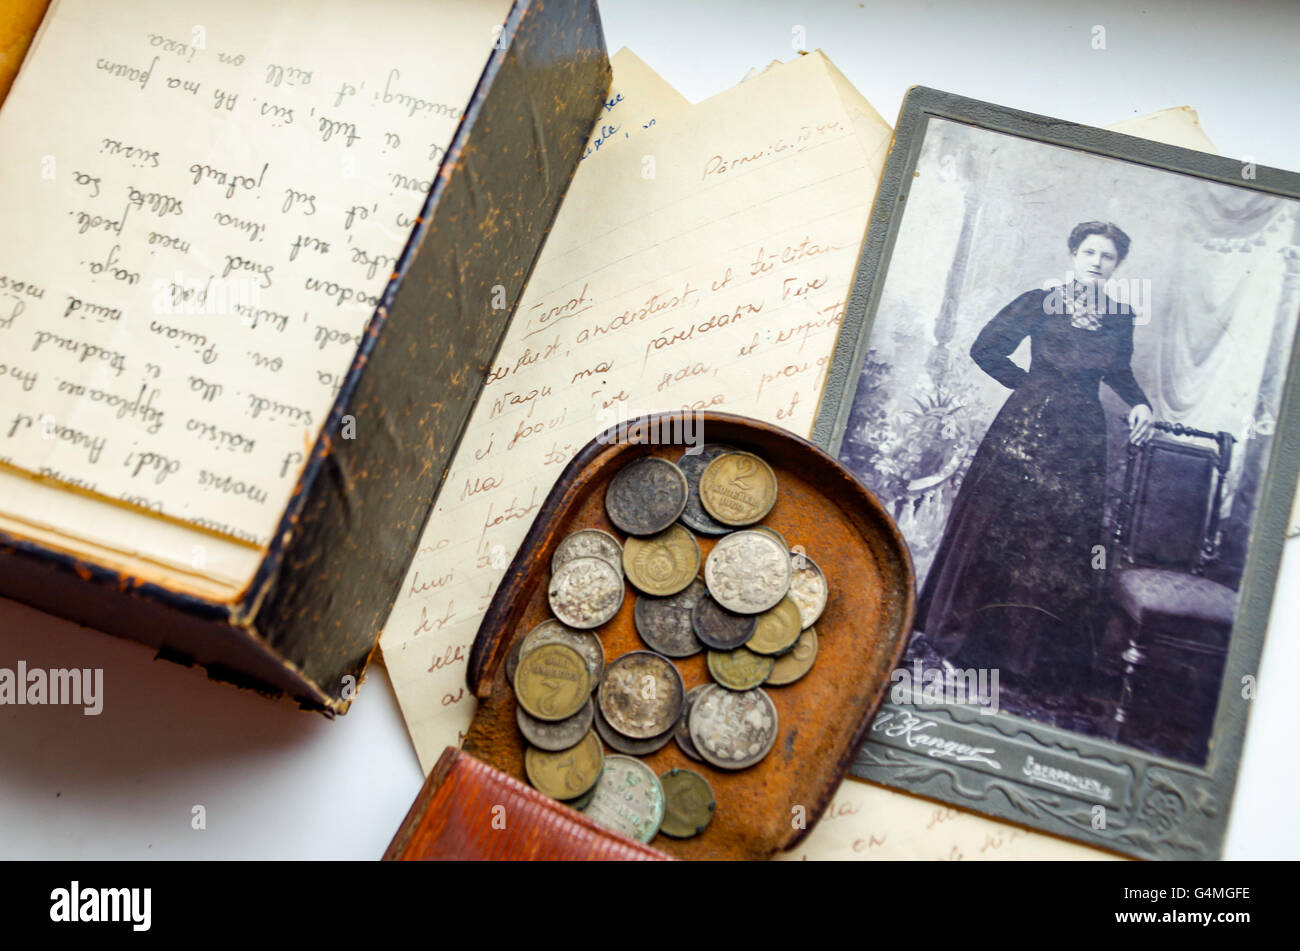 In pelle custodia per monete di monete dall Impero Russo, scritto lettere d'amore da gli anni trenta e gli anni quaranta e un b&w foto di una signora Foto Stock